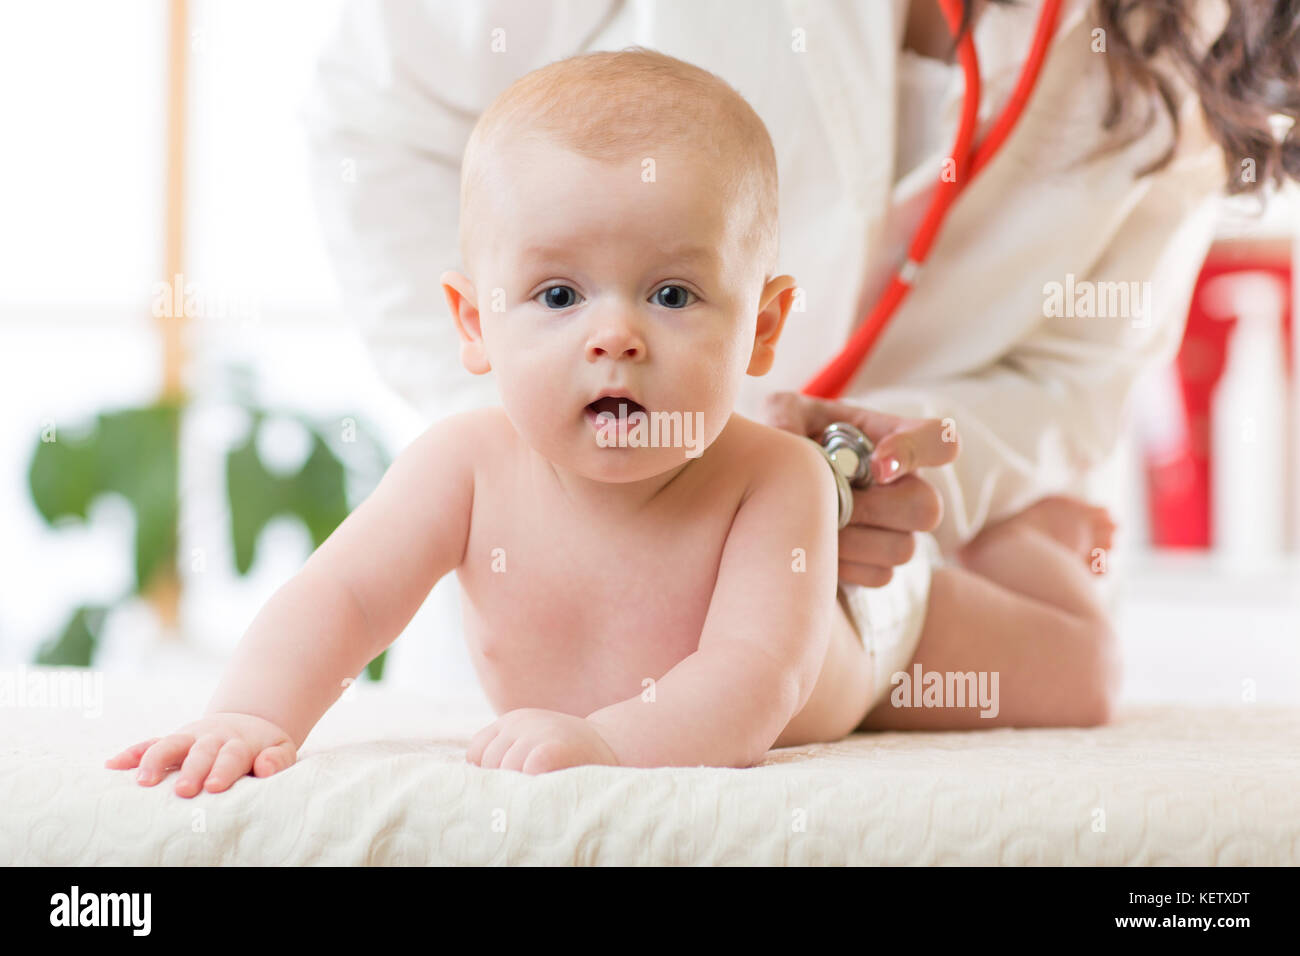 Kinderarzt untersucht neugeborenes Baby. Arzt mit einem Stethoskop, das Kind zurück zu überprüfen Herzschlag zu hören. Kid ist mit Blick auf die Kamera. Stockfoto